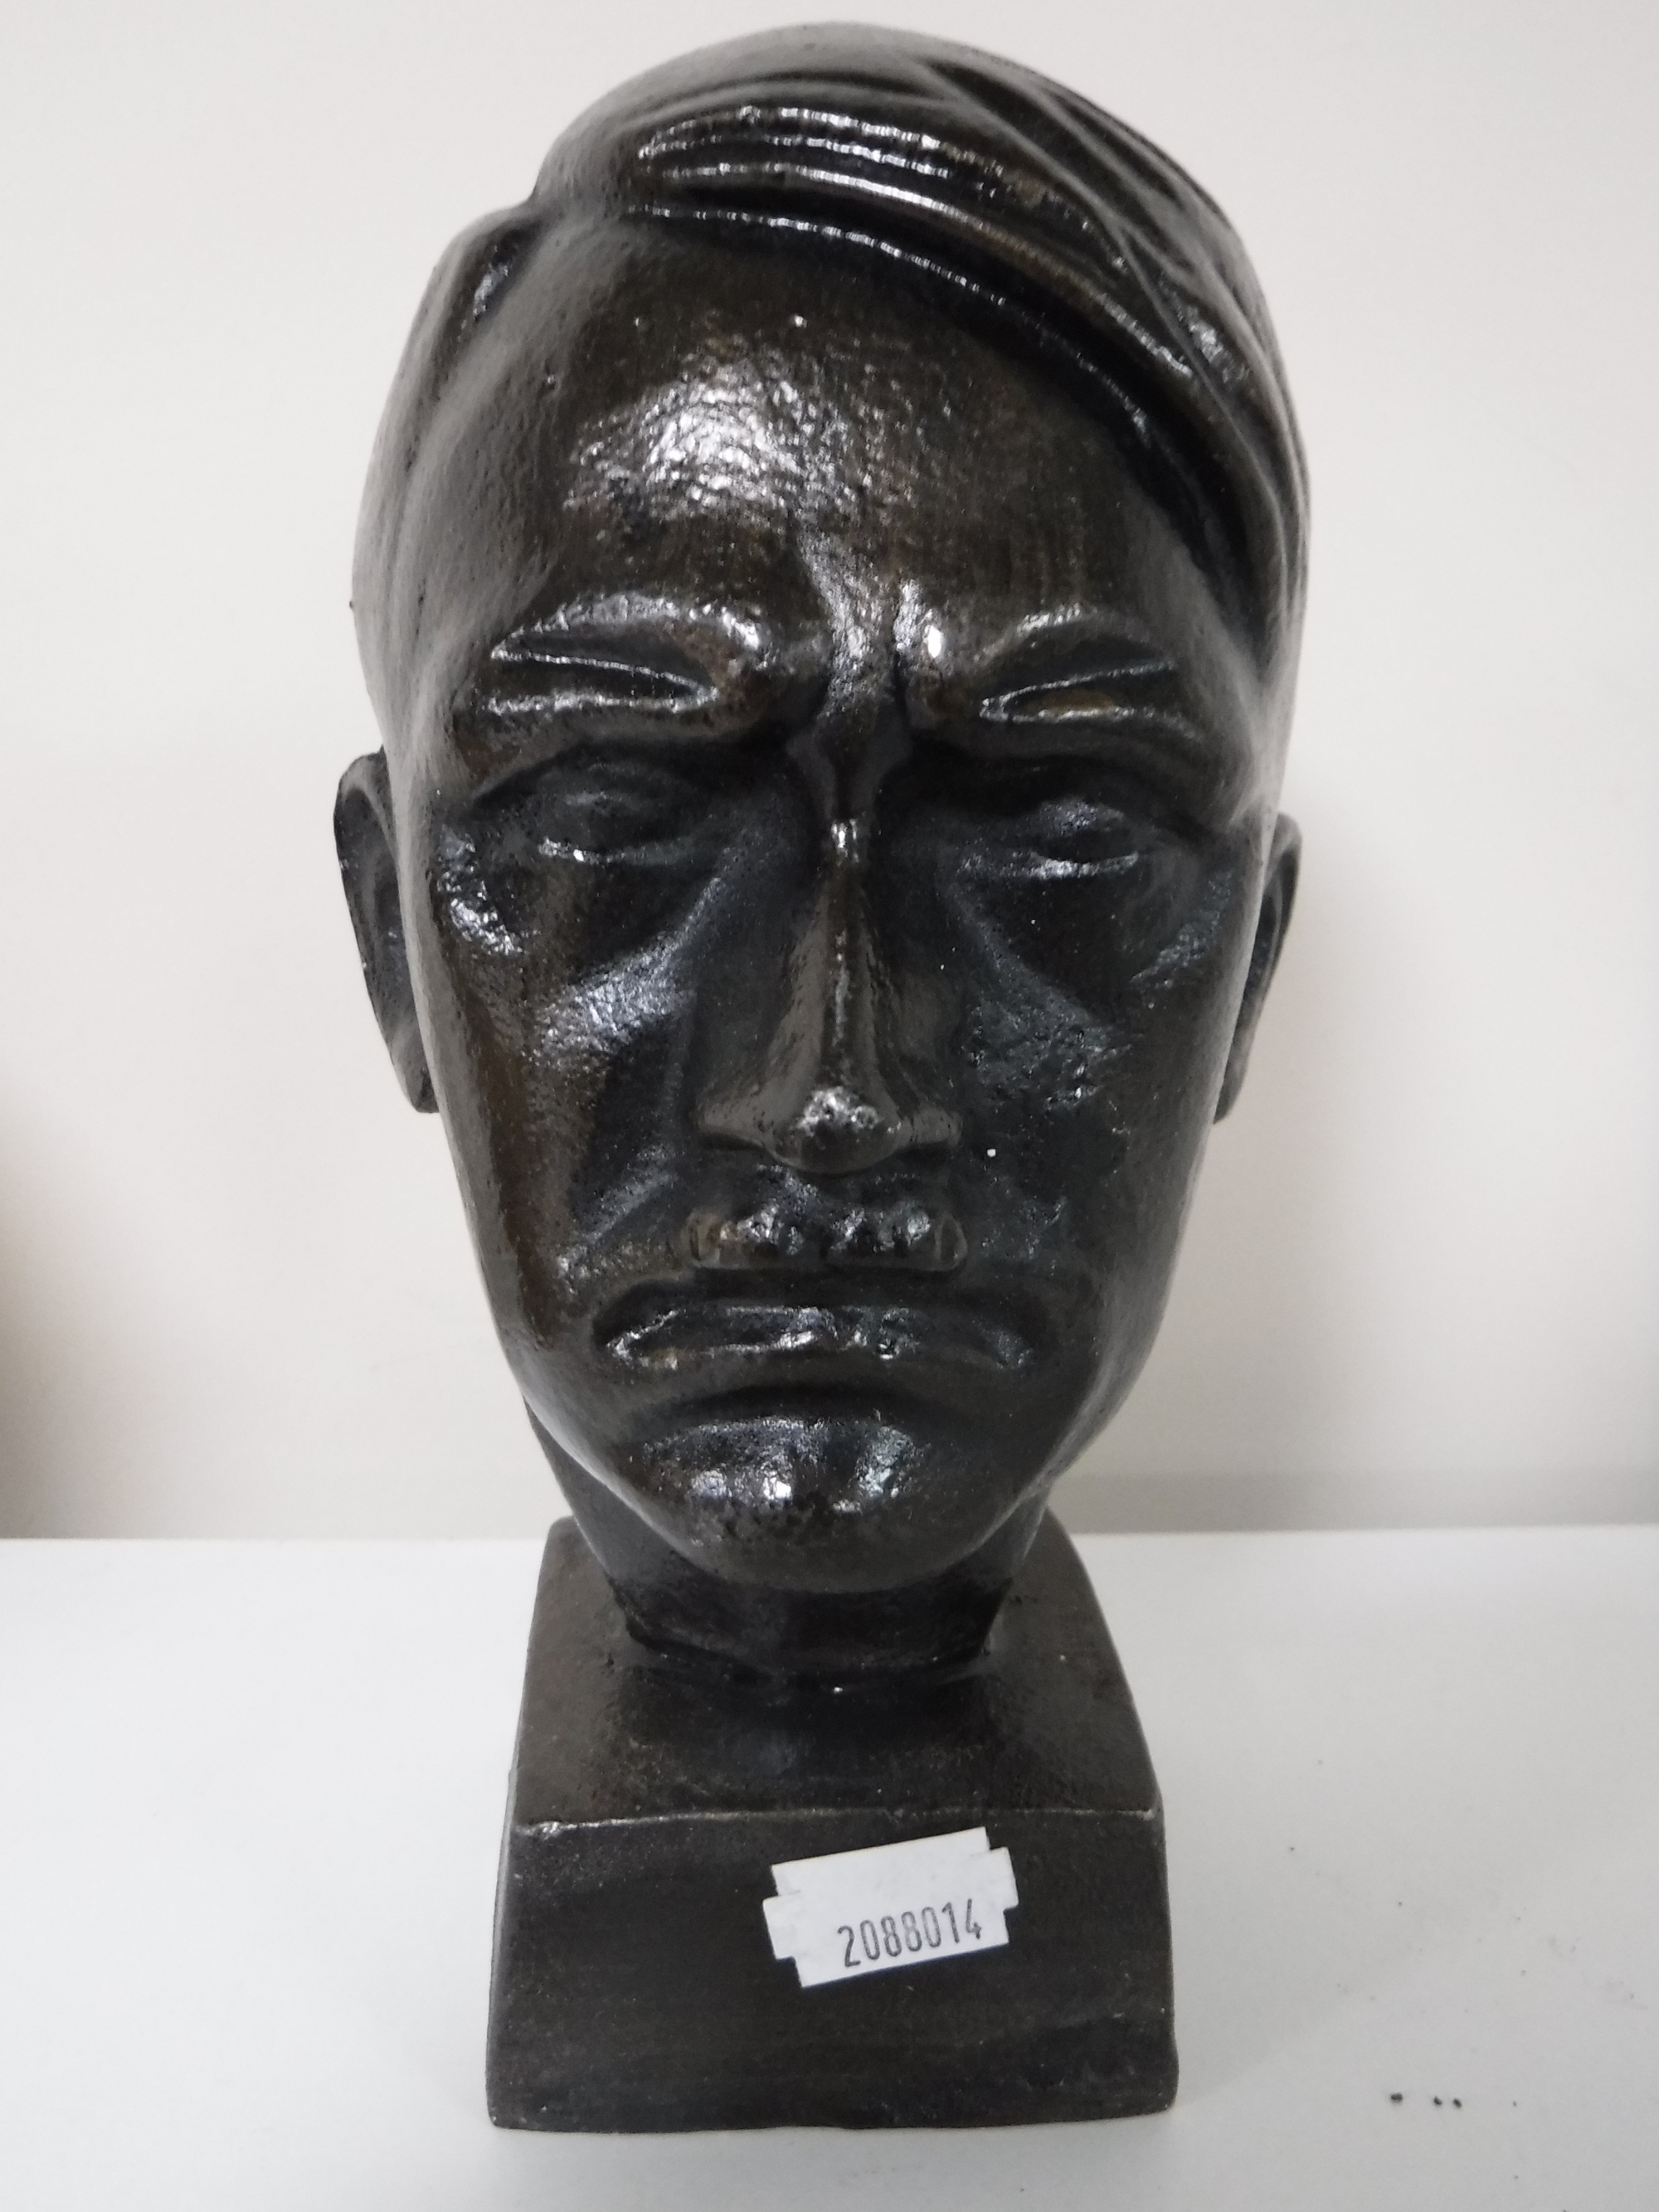 A cast metal bust of Hitler